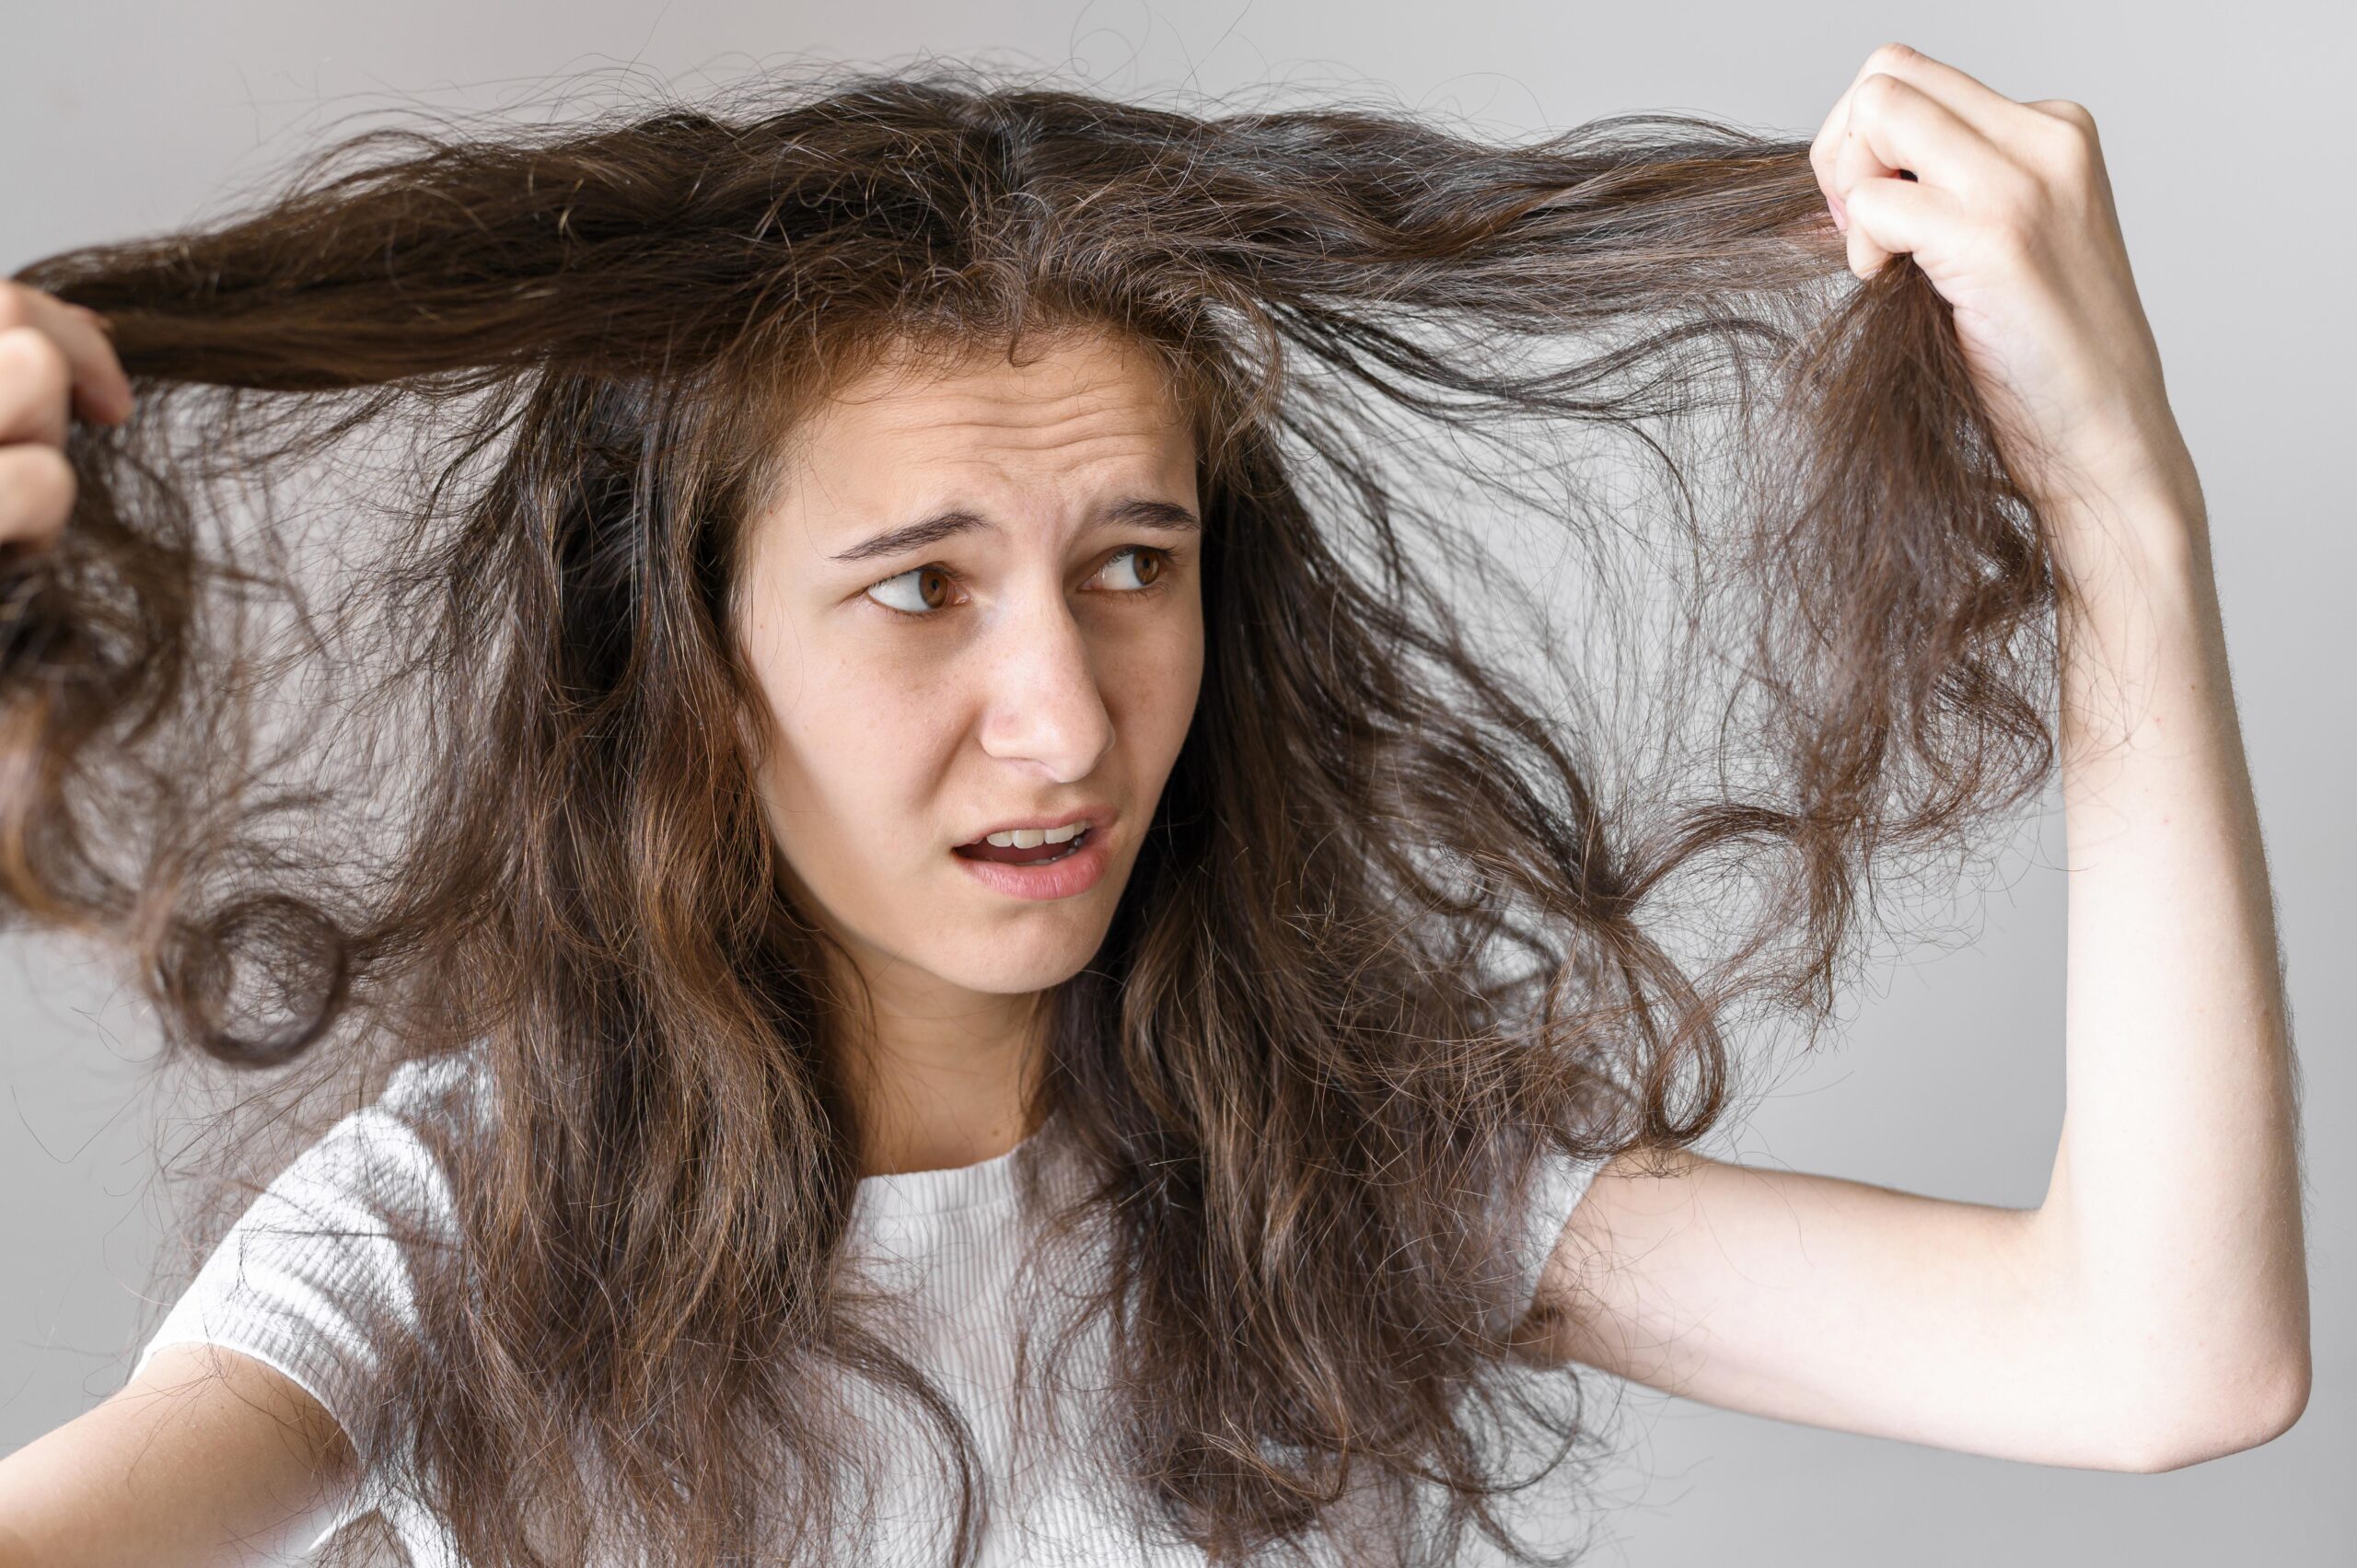 False myths about hair loss